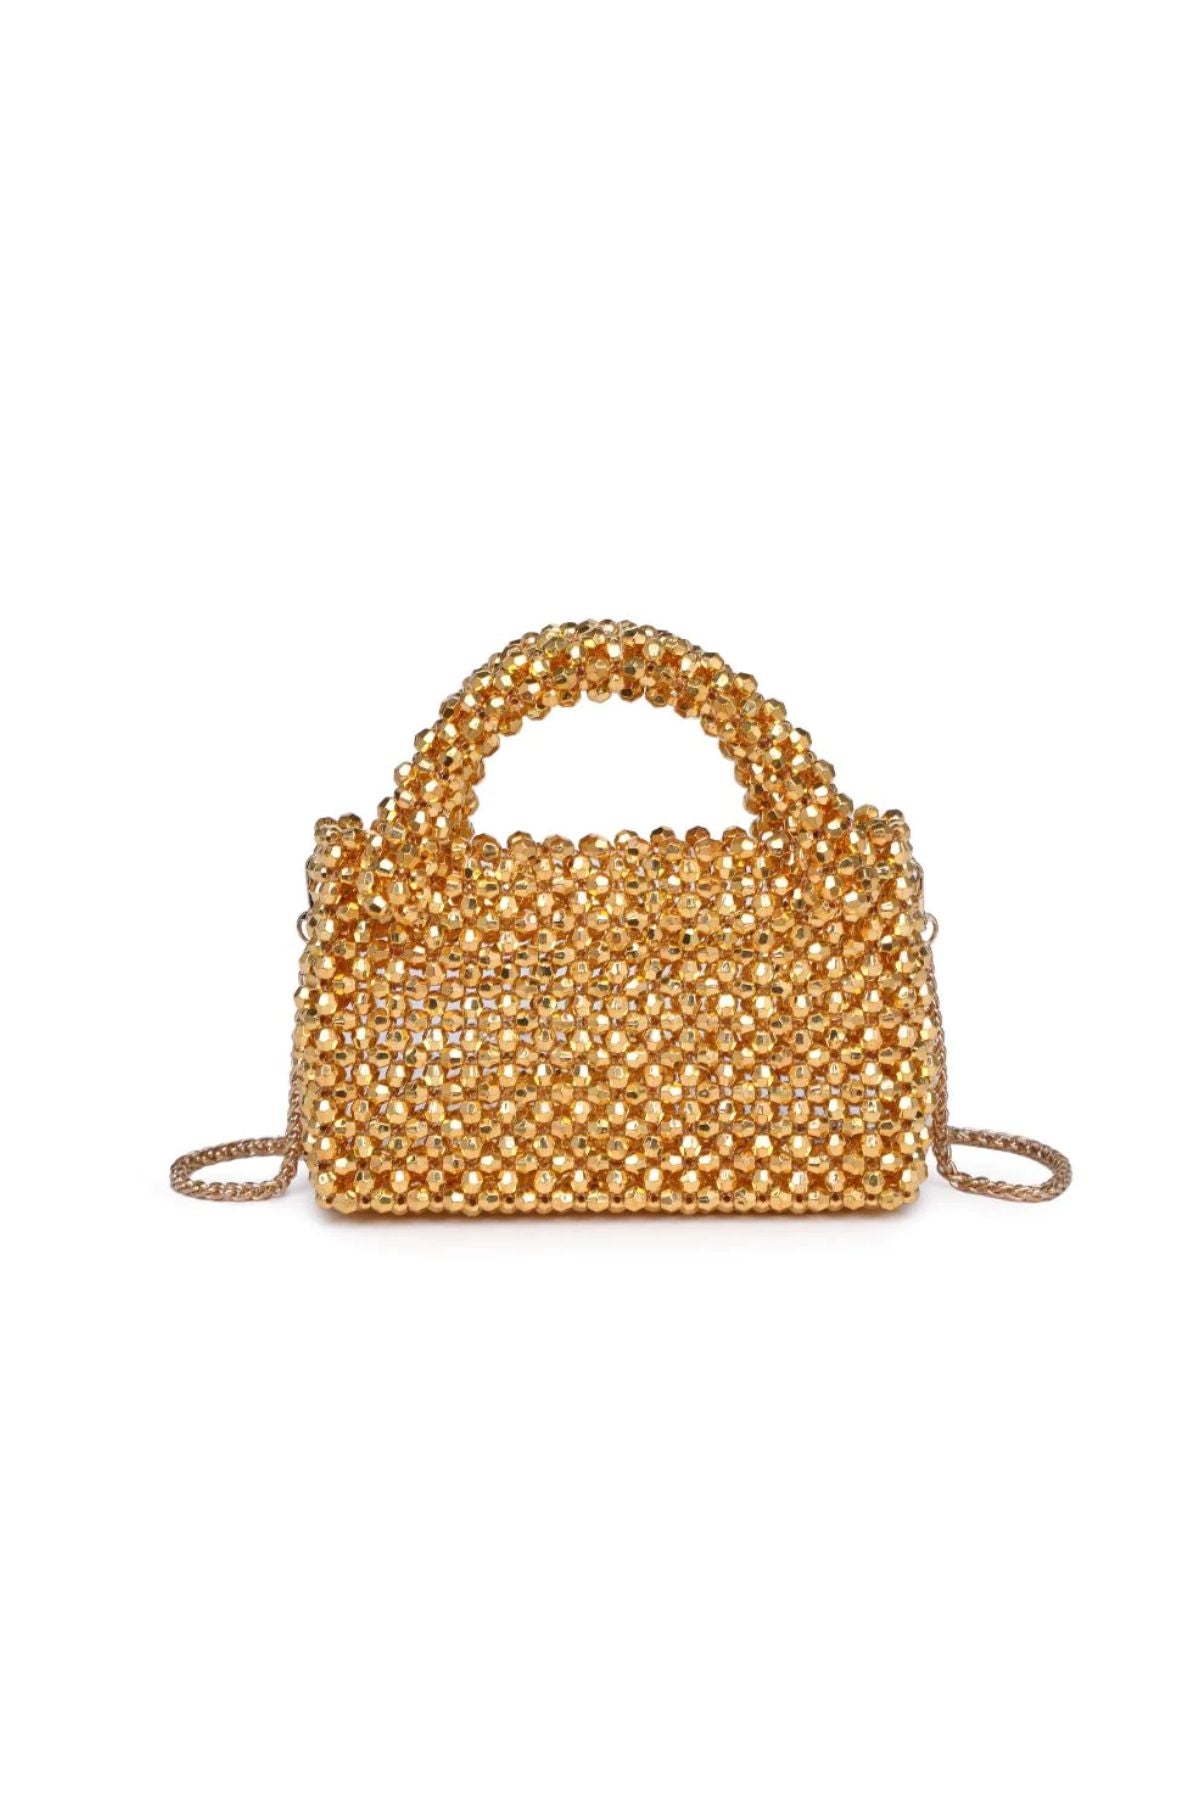 Gold beaded handbag